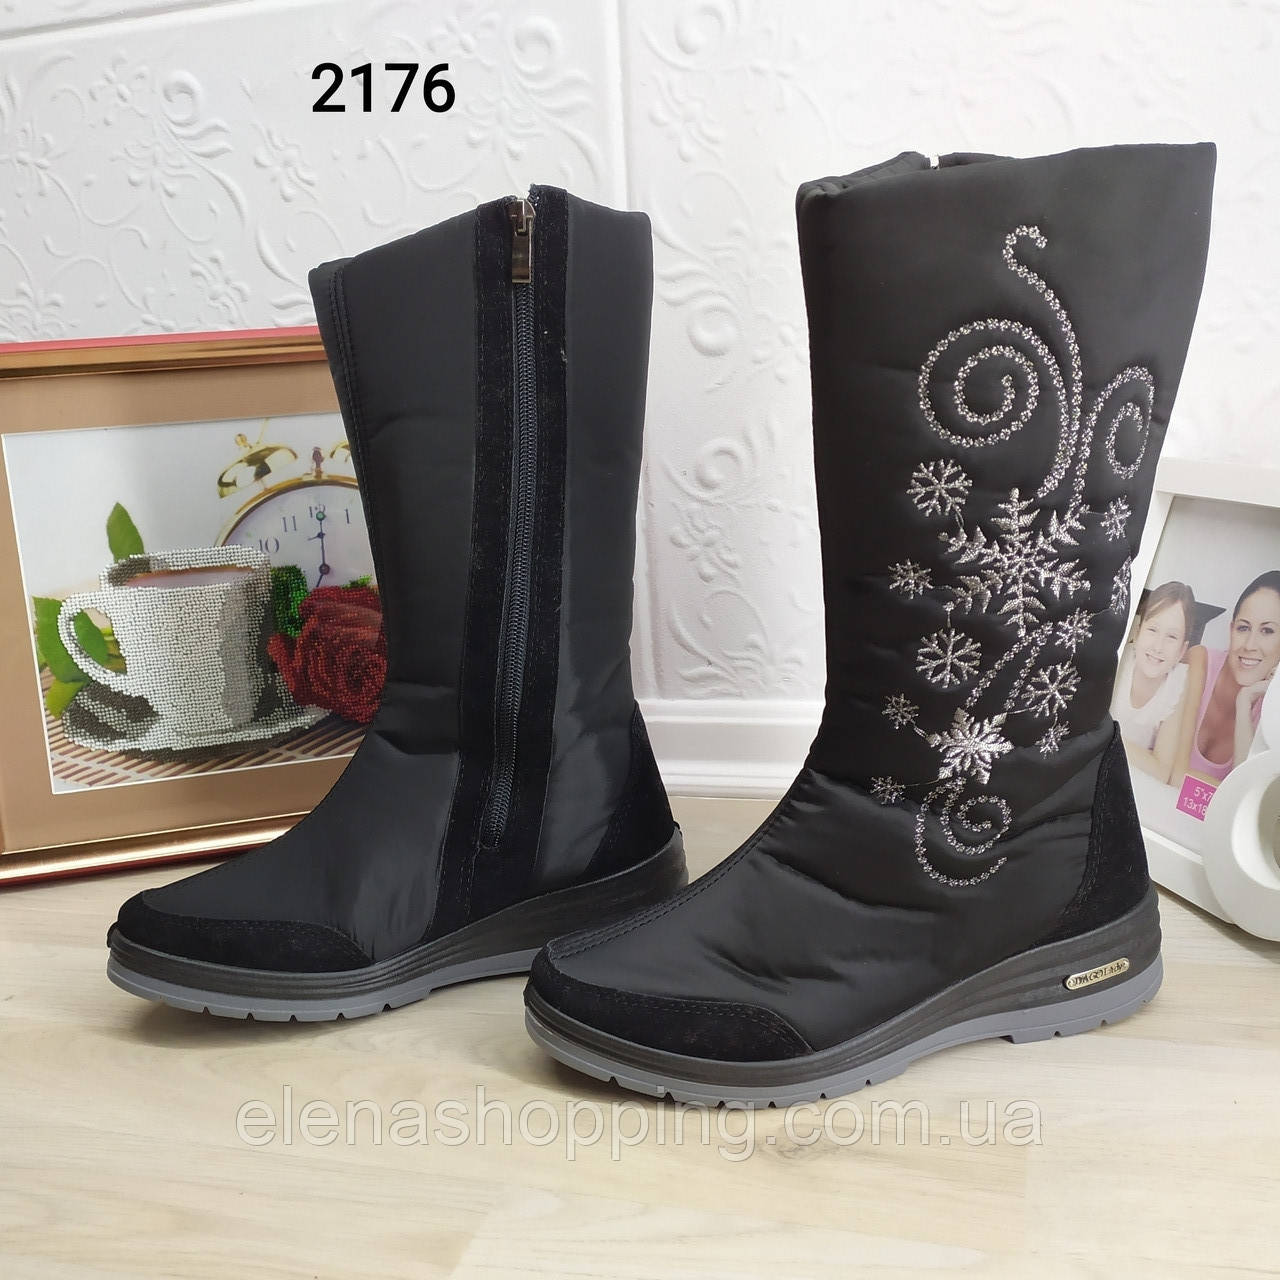 Жіночі зимові чоботи р39-41 (2176-00)